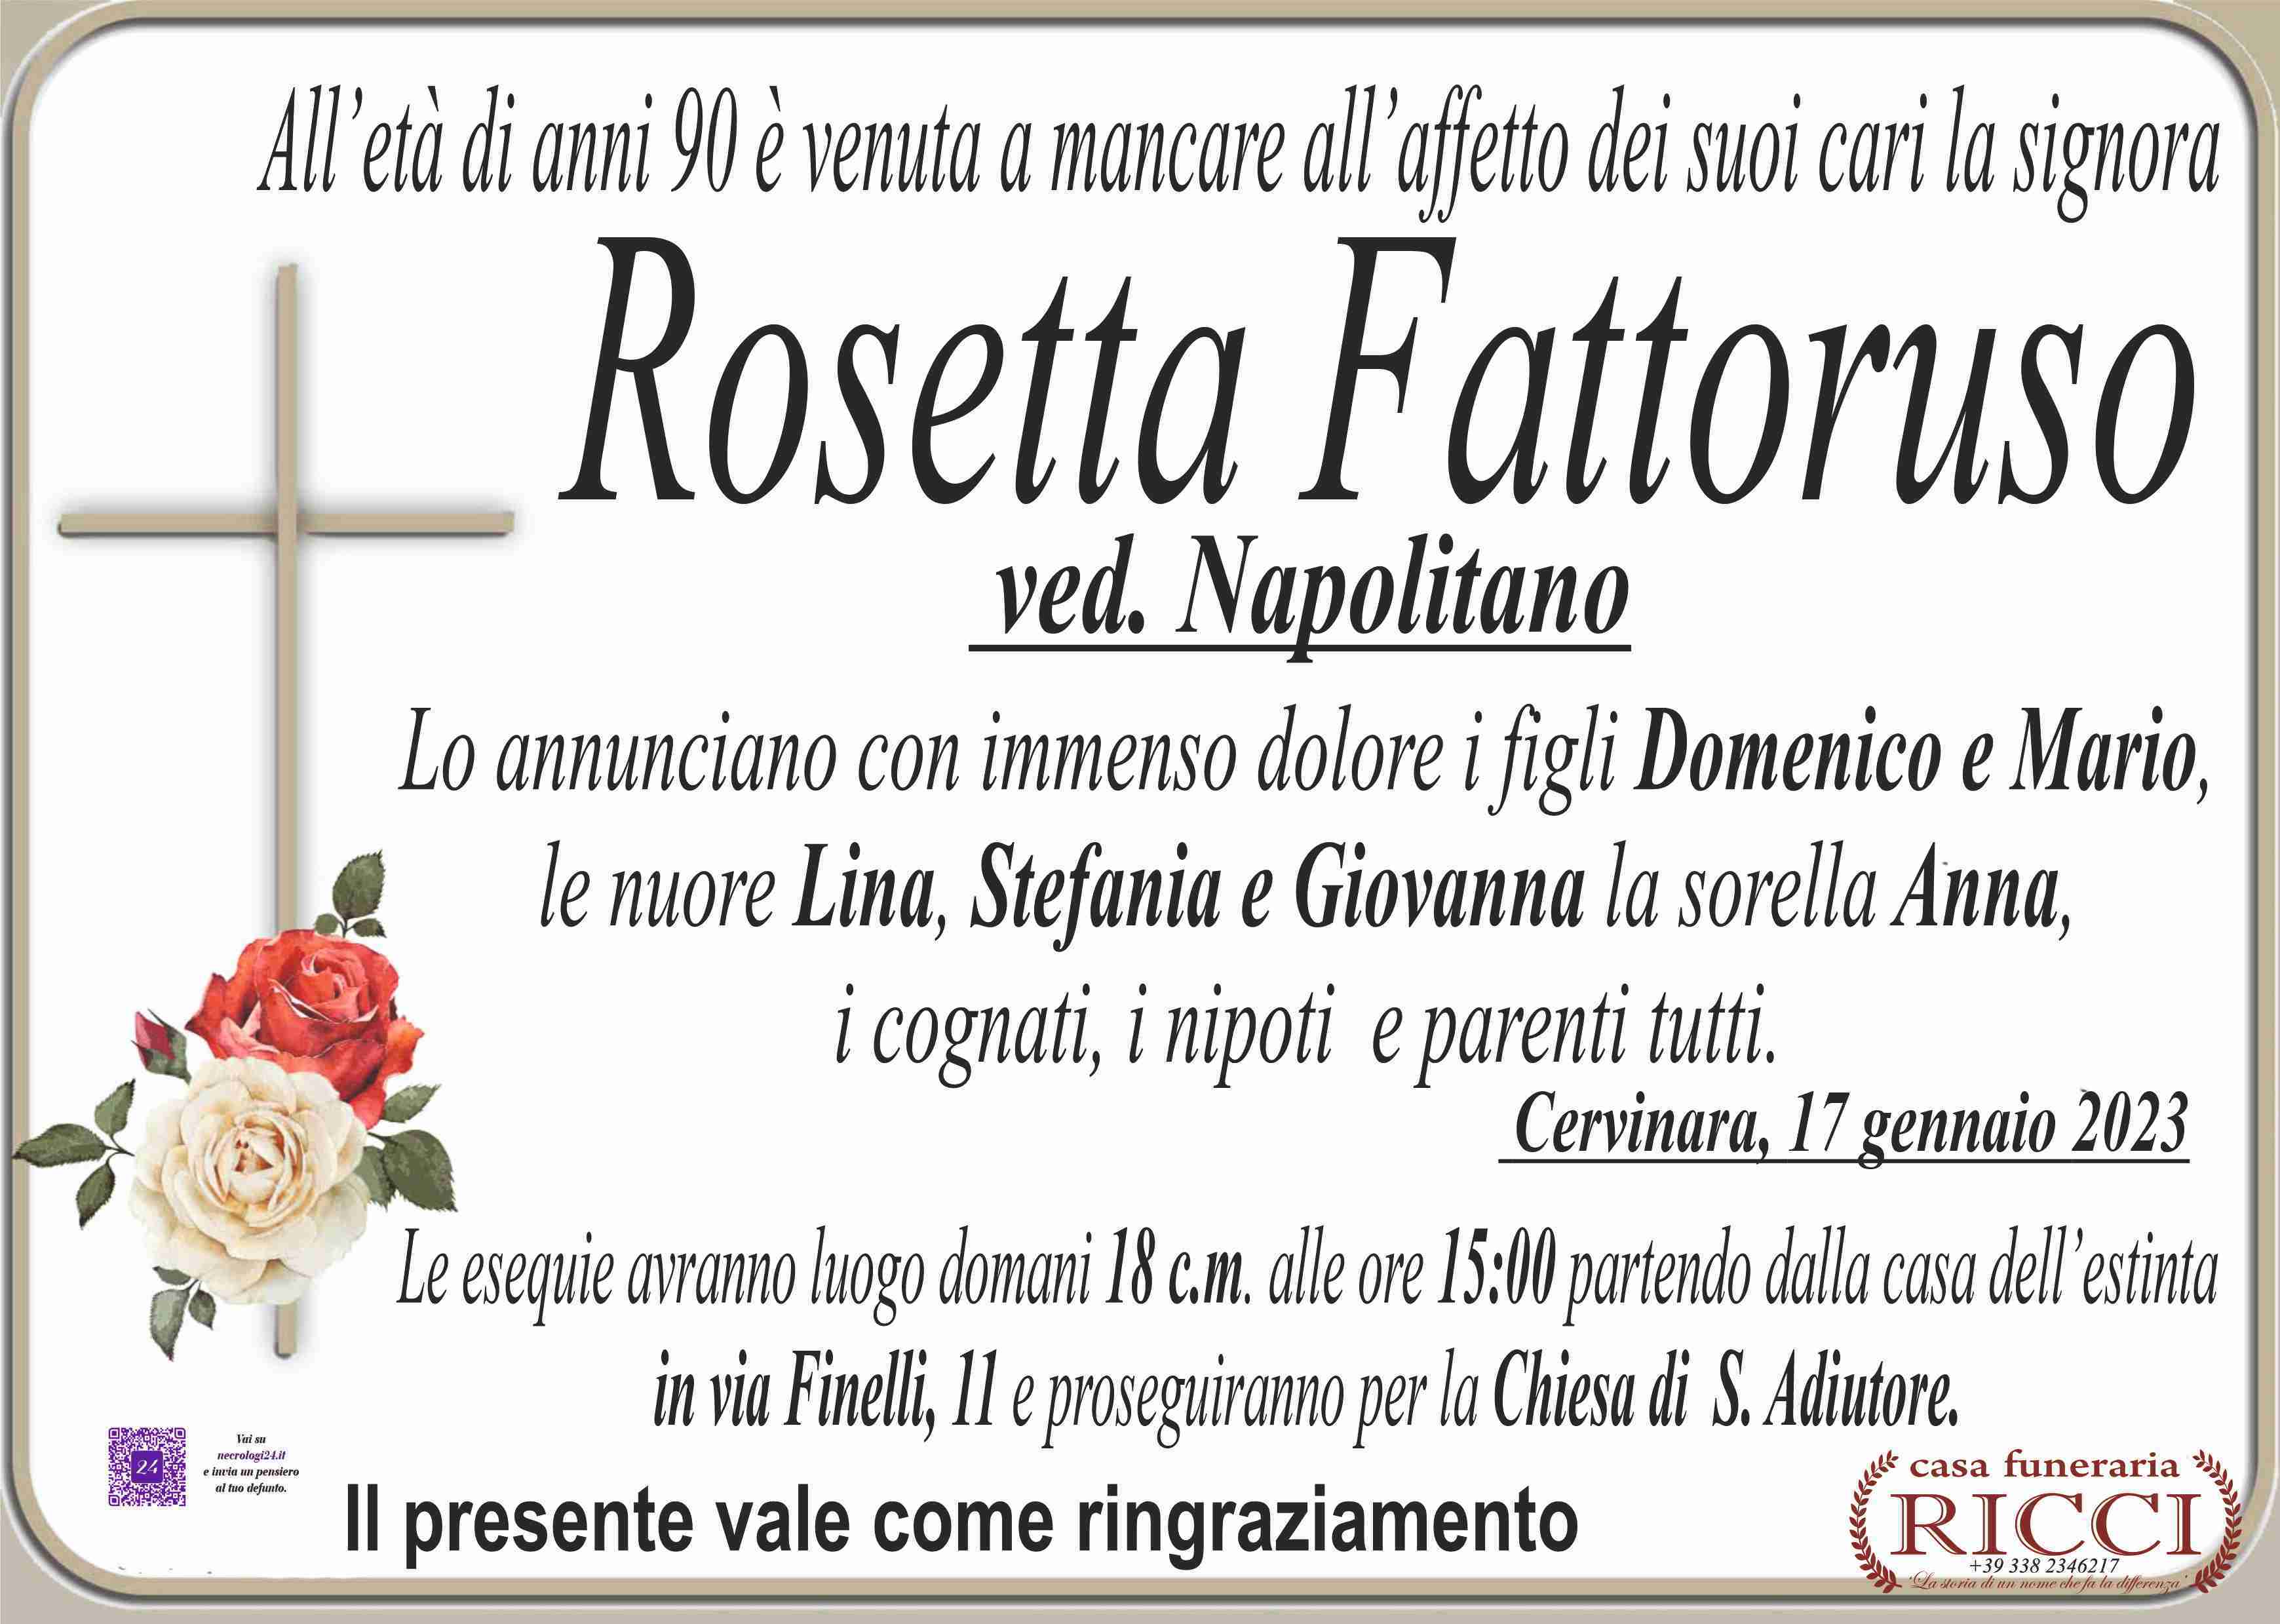 Rosetta Fattoruso